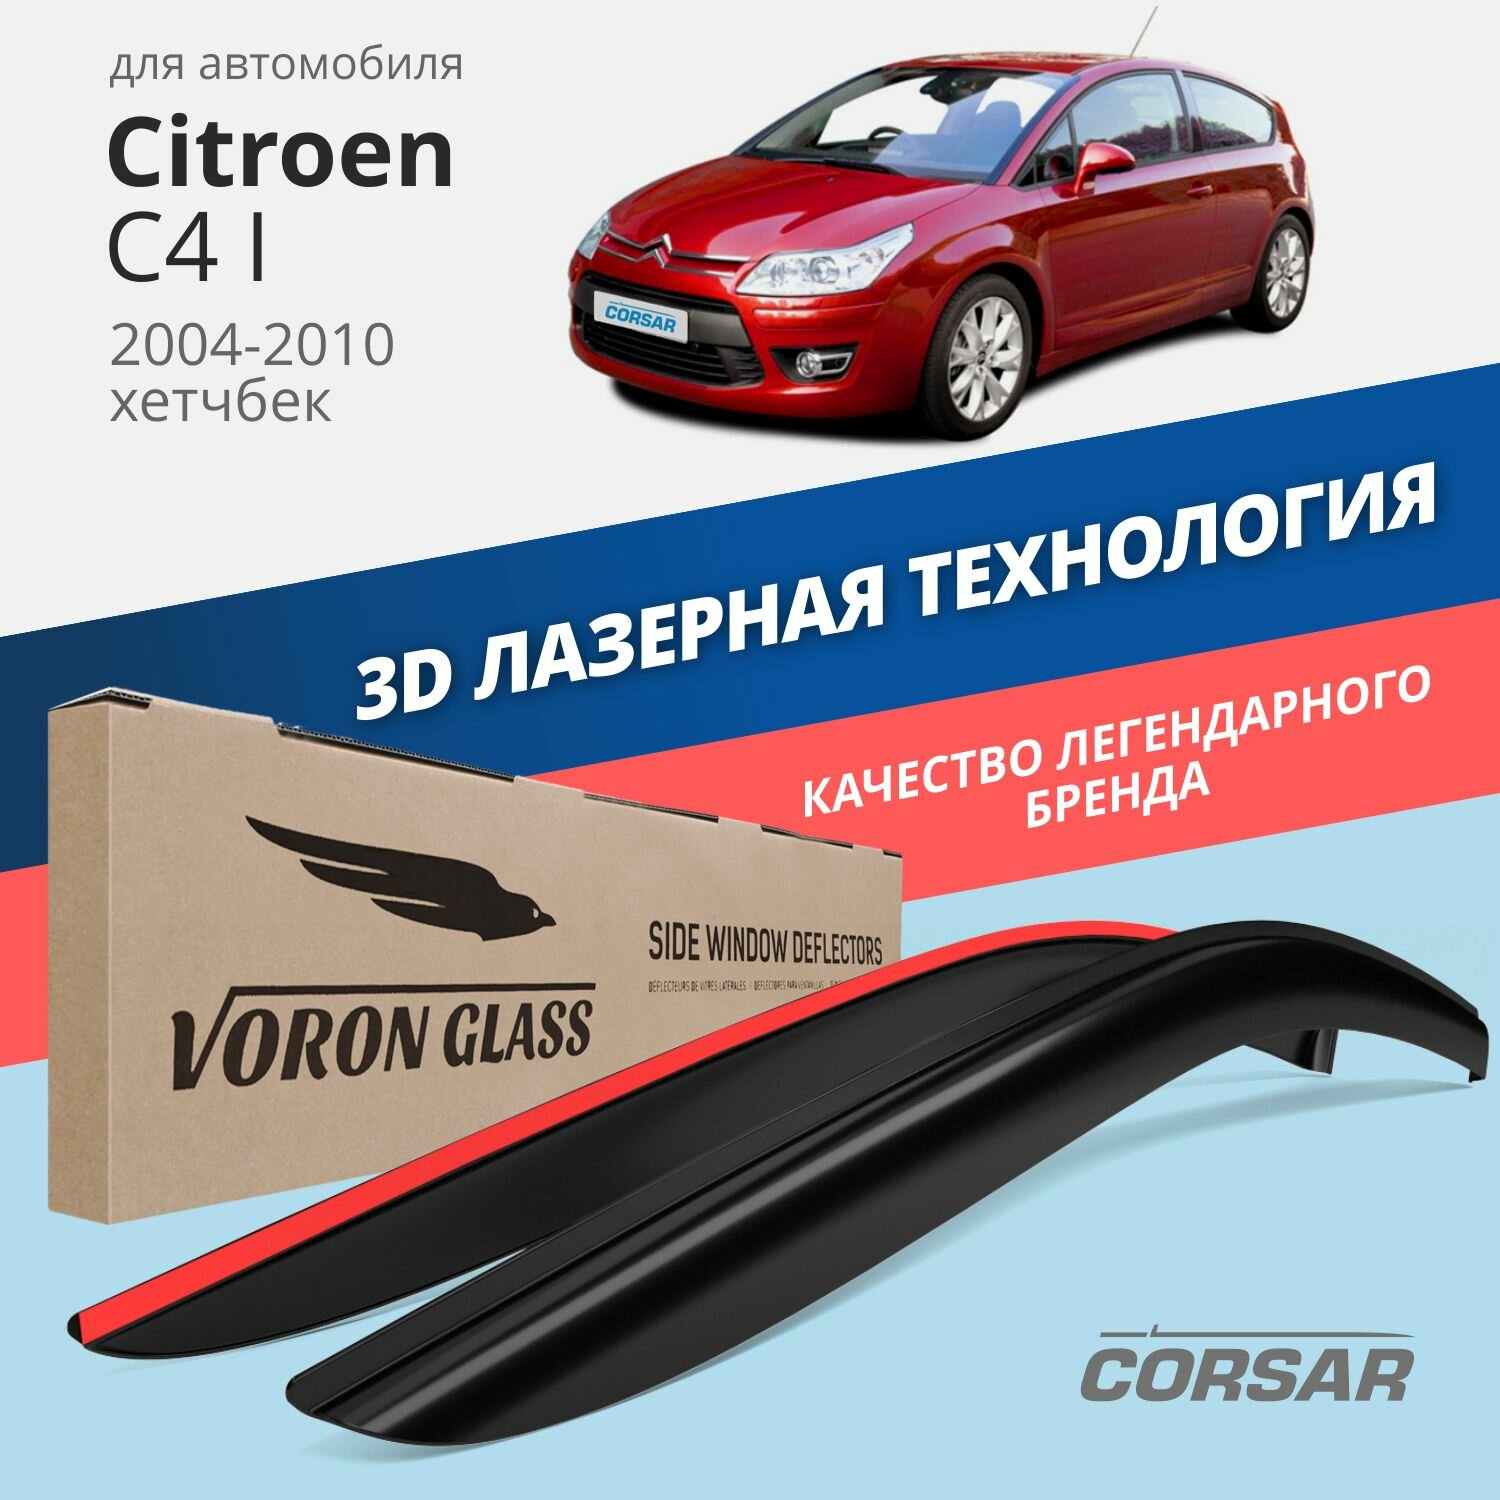 Дефлекторы на боковые стекла Voron Glass серия CORSAR для Citroen C4 I Hb 3d 2004-2010/хетчбек/накладные/скотч /к-т 2 шт./